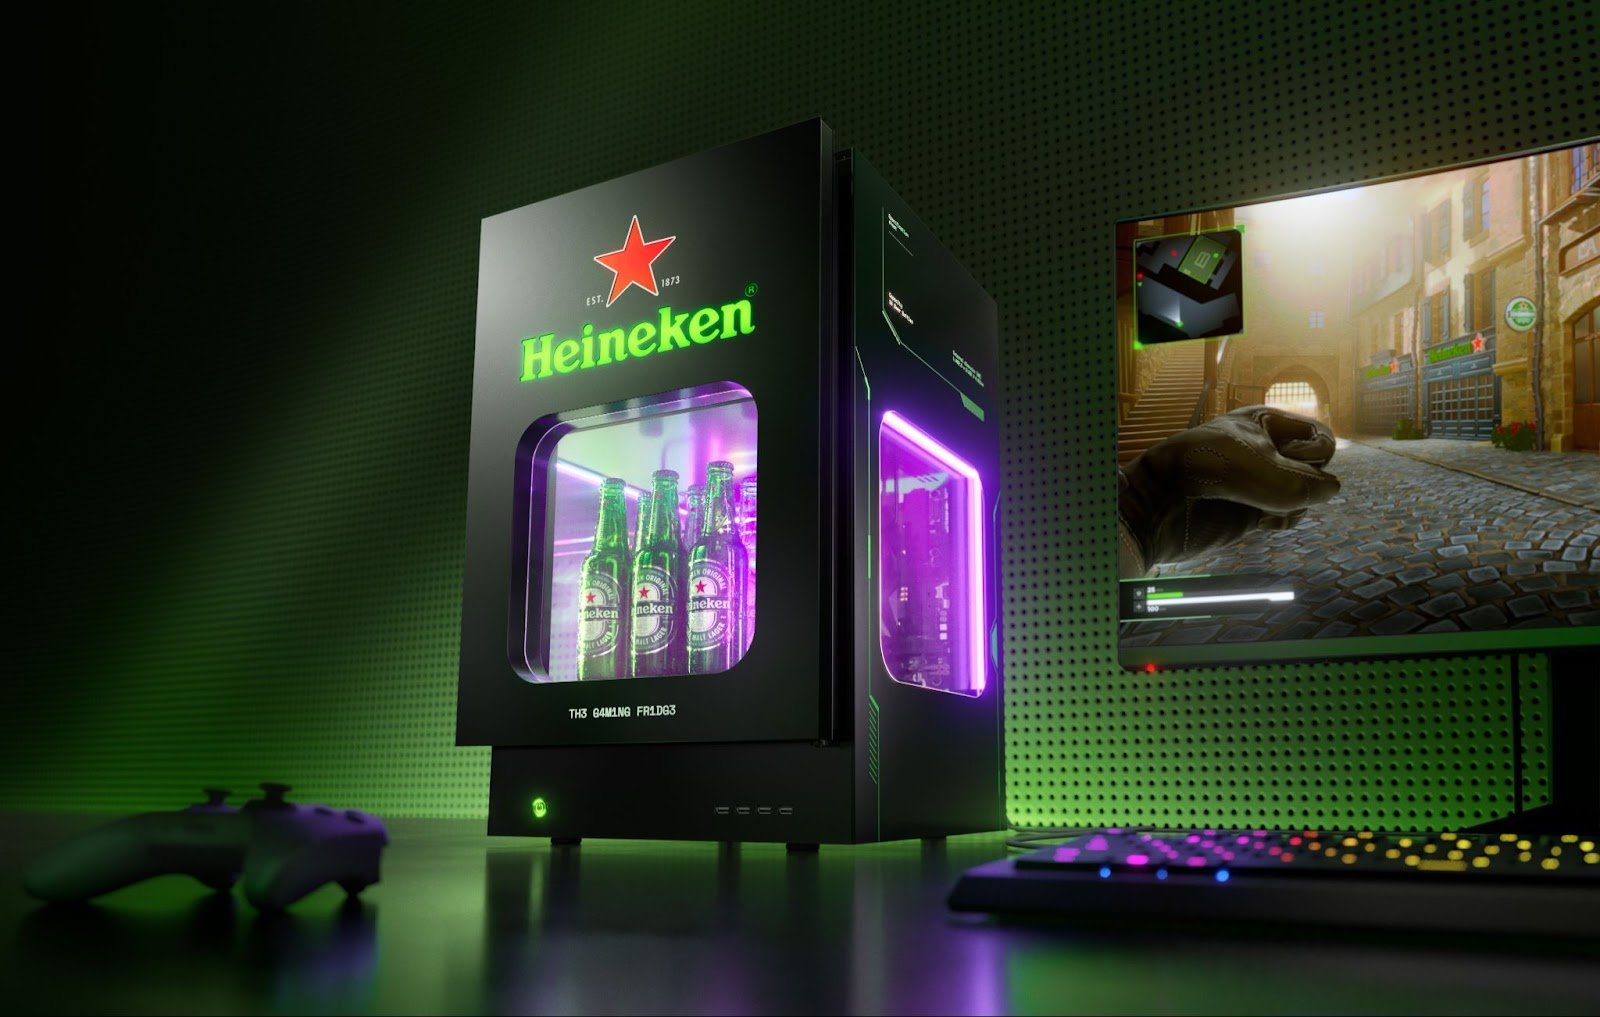 The Gaming Fridge Promocao da Heineken® vai sortear 3 unidades do produto para consumidores POP CYBER